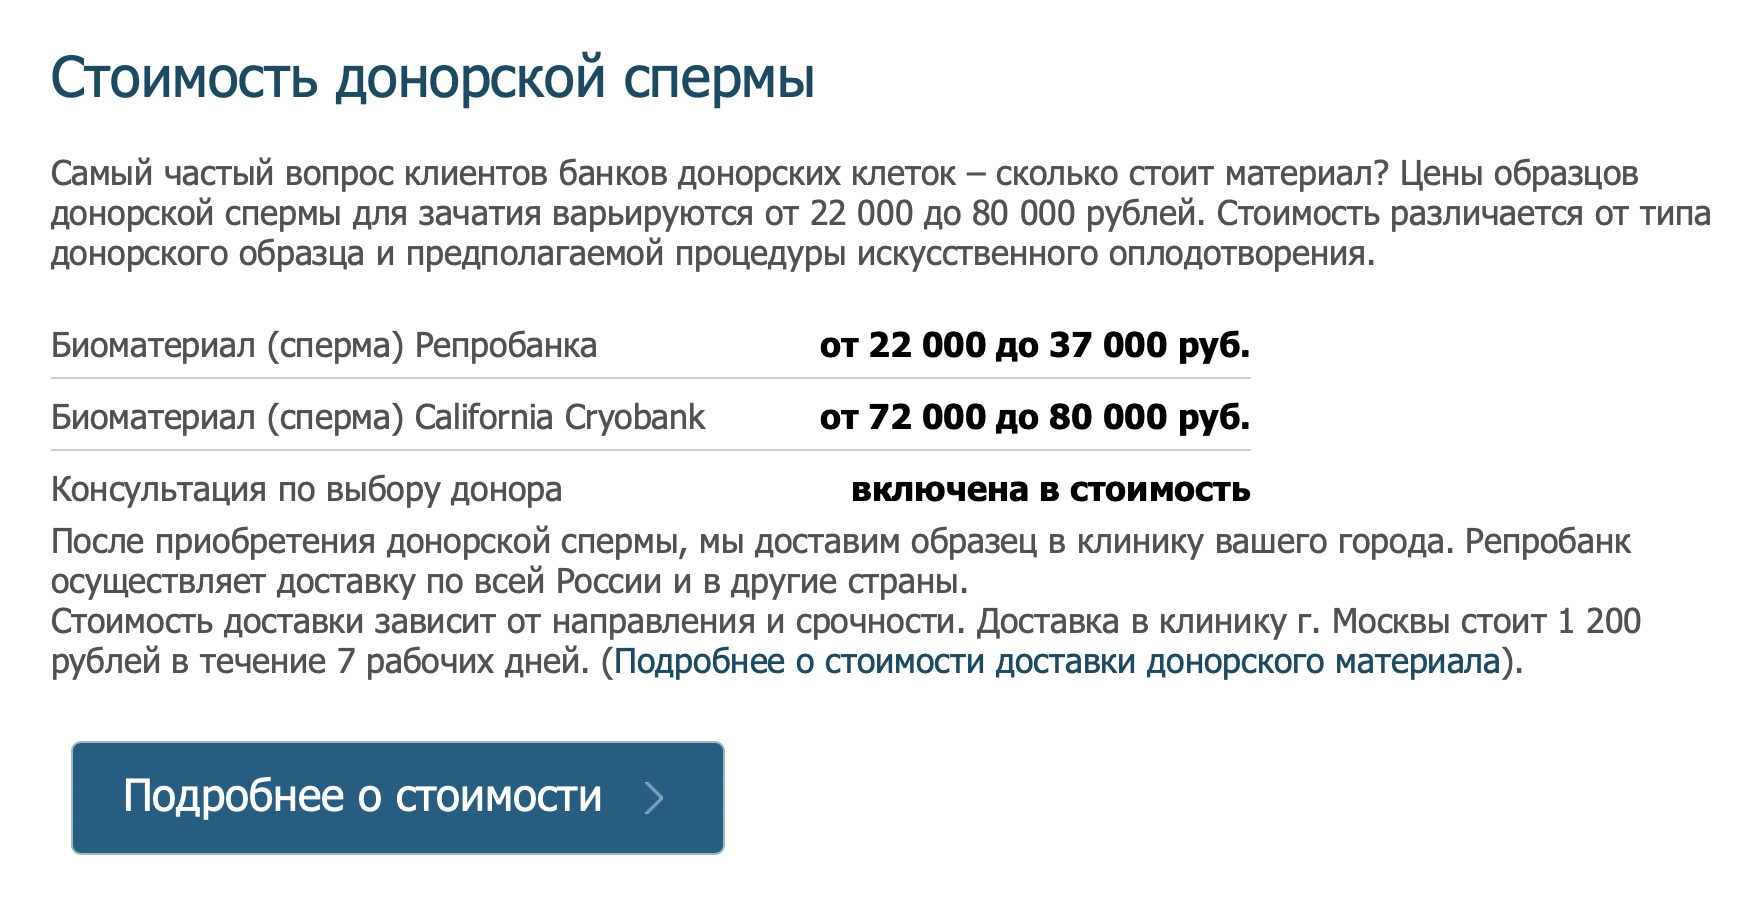 Стать донором спермы в СПб | Вознаграждение 5 тыс. руб. за сдачу материала